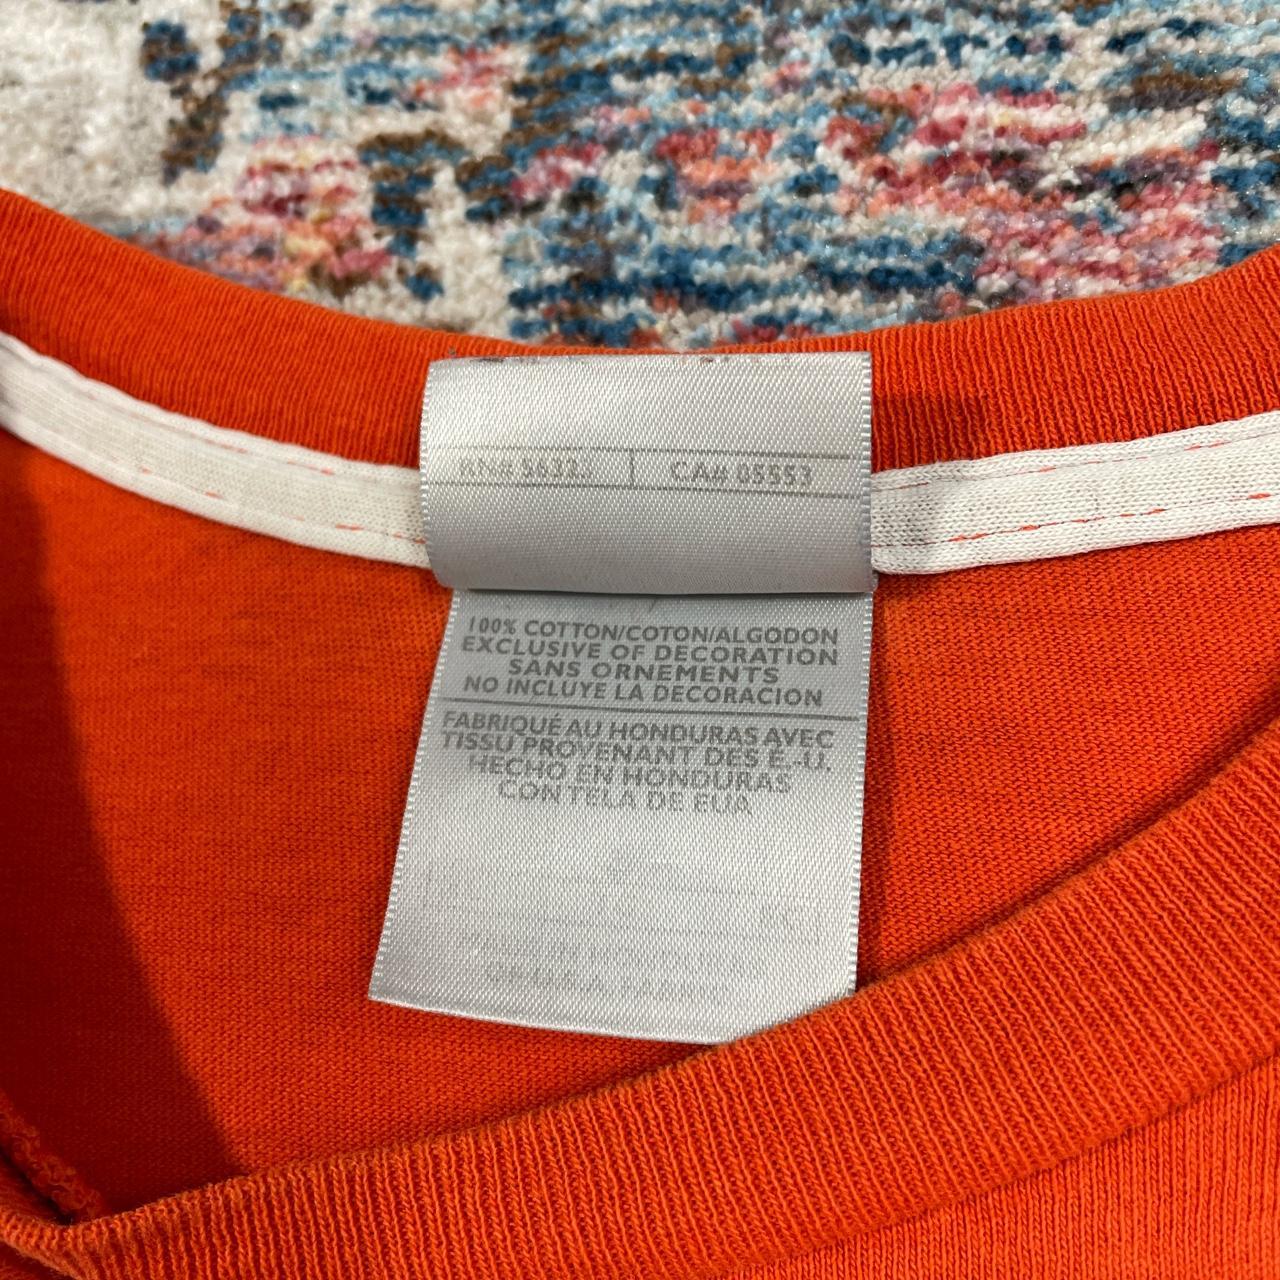 Vintage Nike Orange T-Shirt